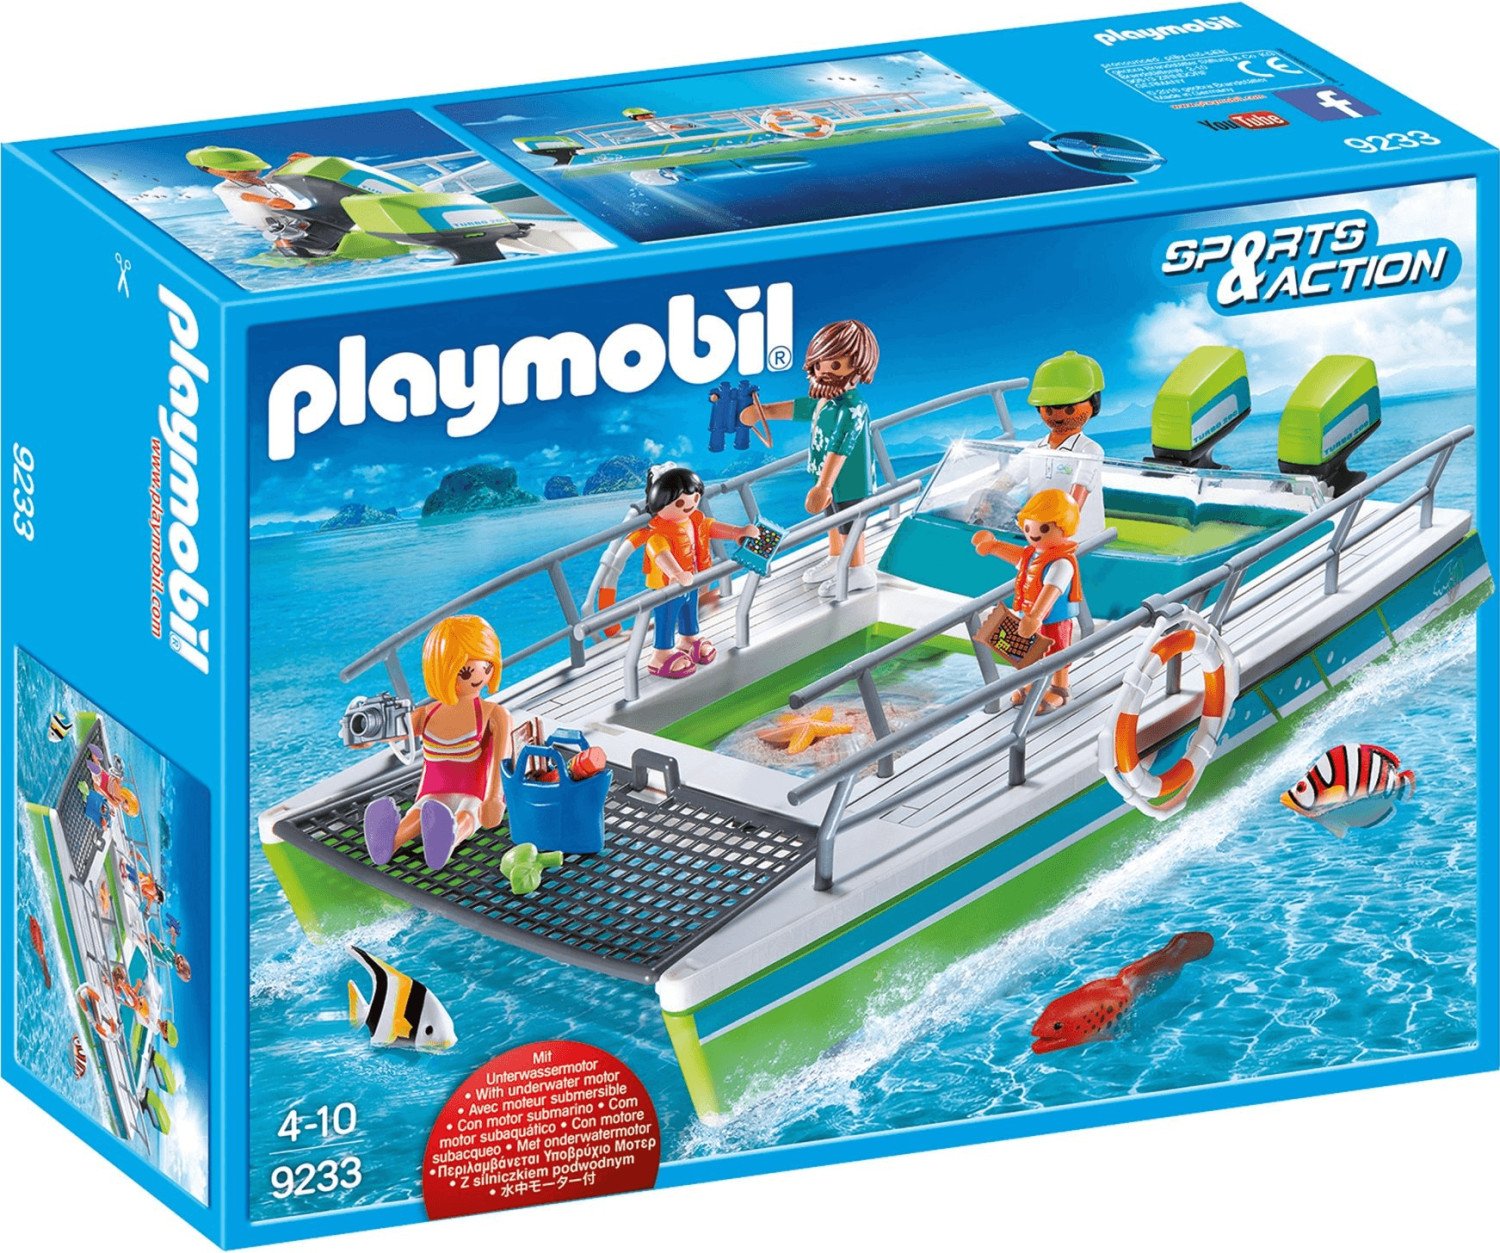 Playmobil Sports & Action - Glasbodenboot mit Unterwassermotor (9233)